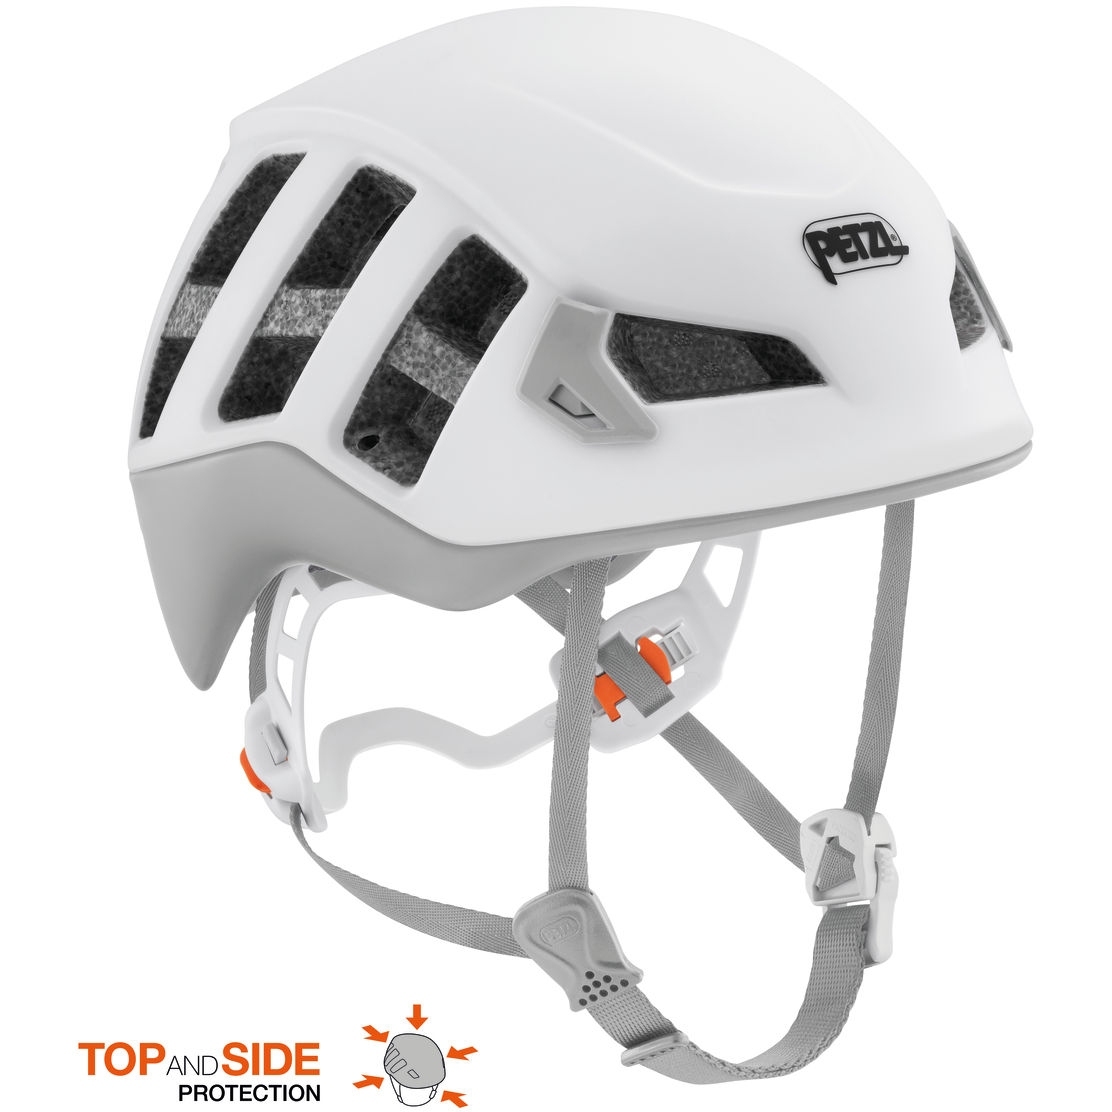 Productfoto van Petzl Meteora Helmet - white/gray